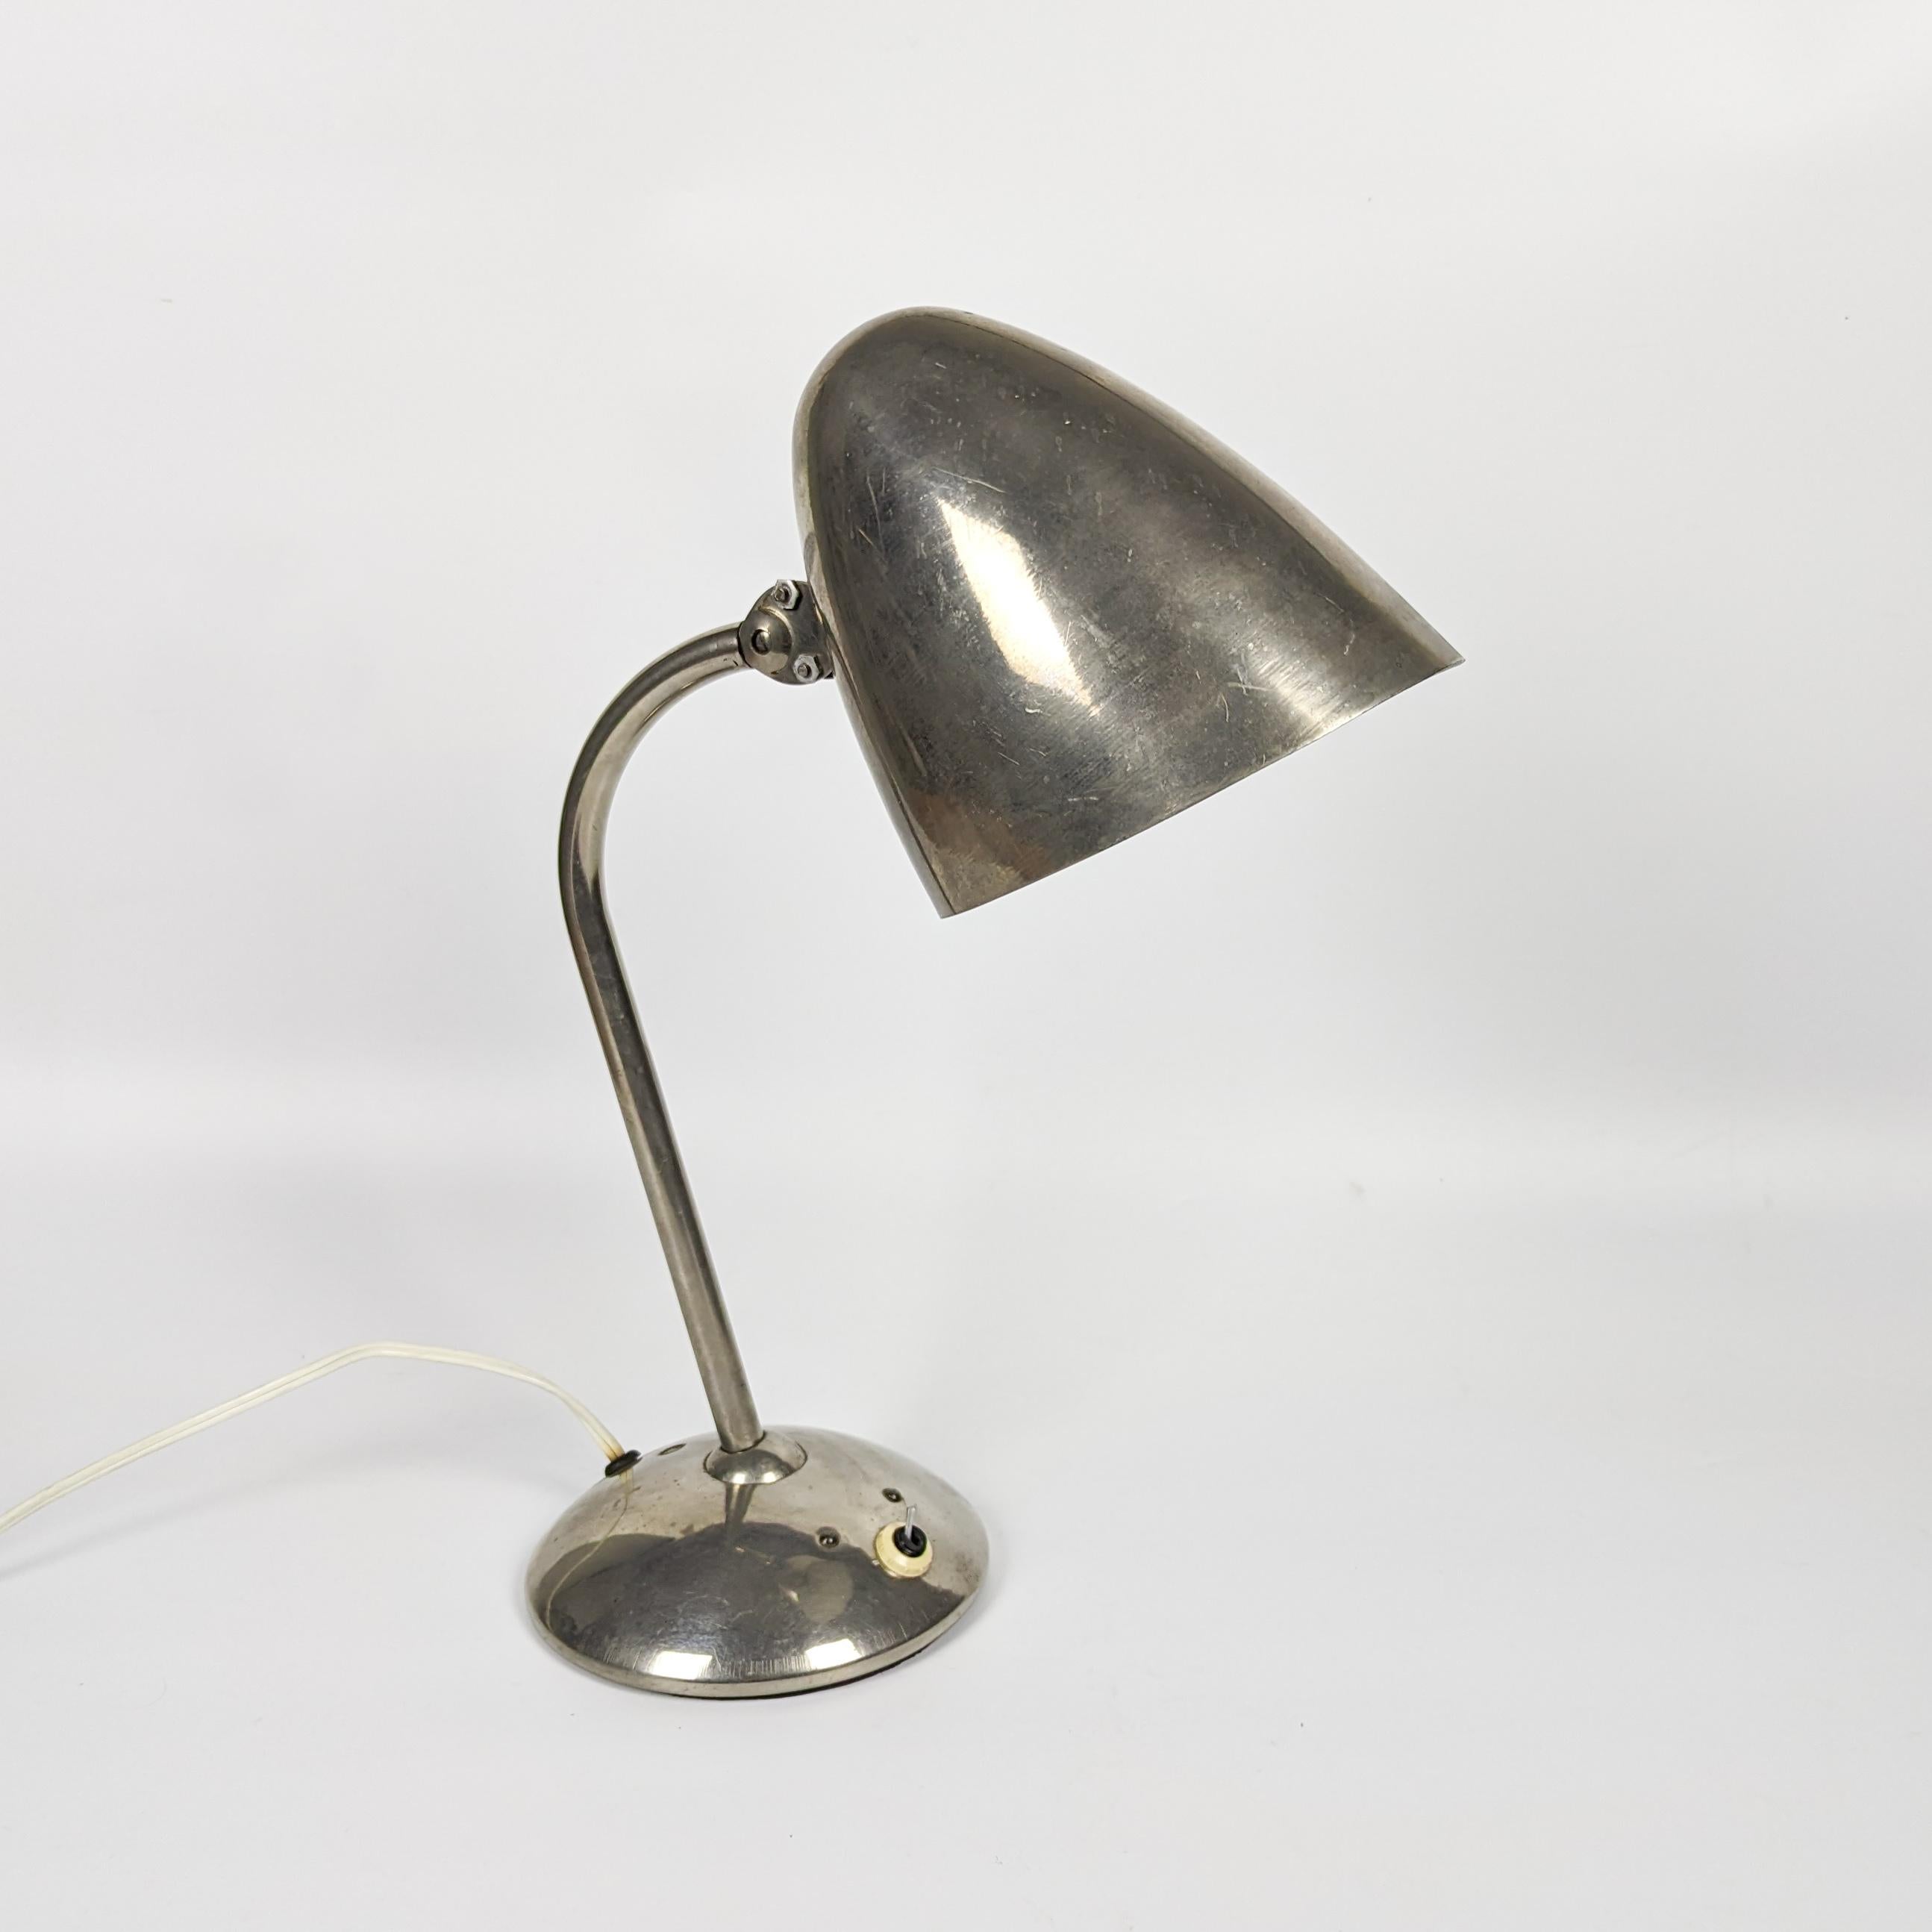 Lampe de table emblématique produite par The Table Company Company et conçue par Jaroslav Anýž, son fils, au début des années 1930. Cette lampe de bureau est réputée pour ses articulations distinctives, brevetées pour permettre à l'abat-jour de